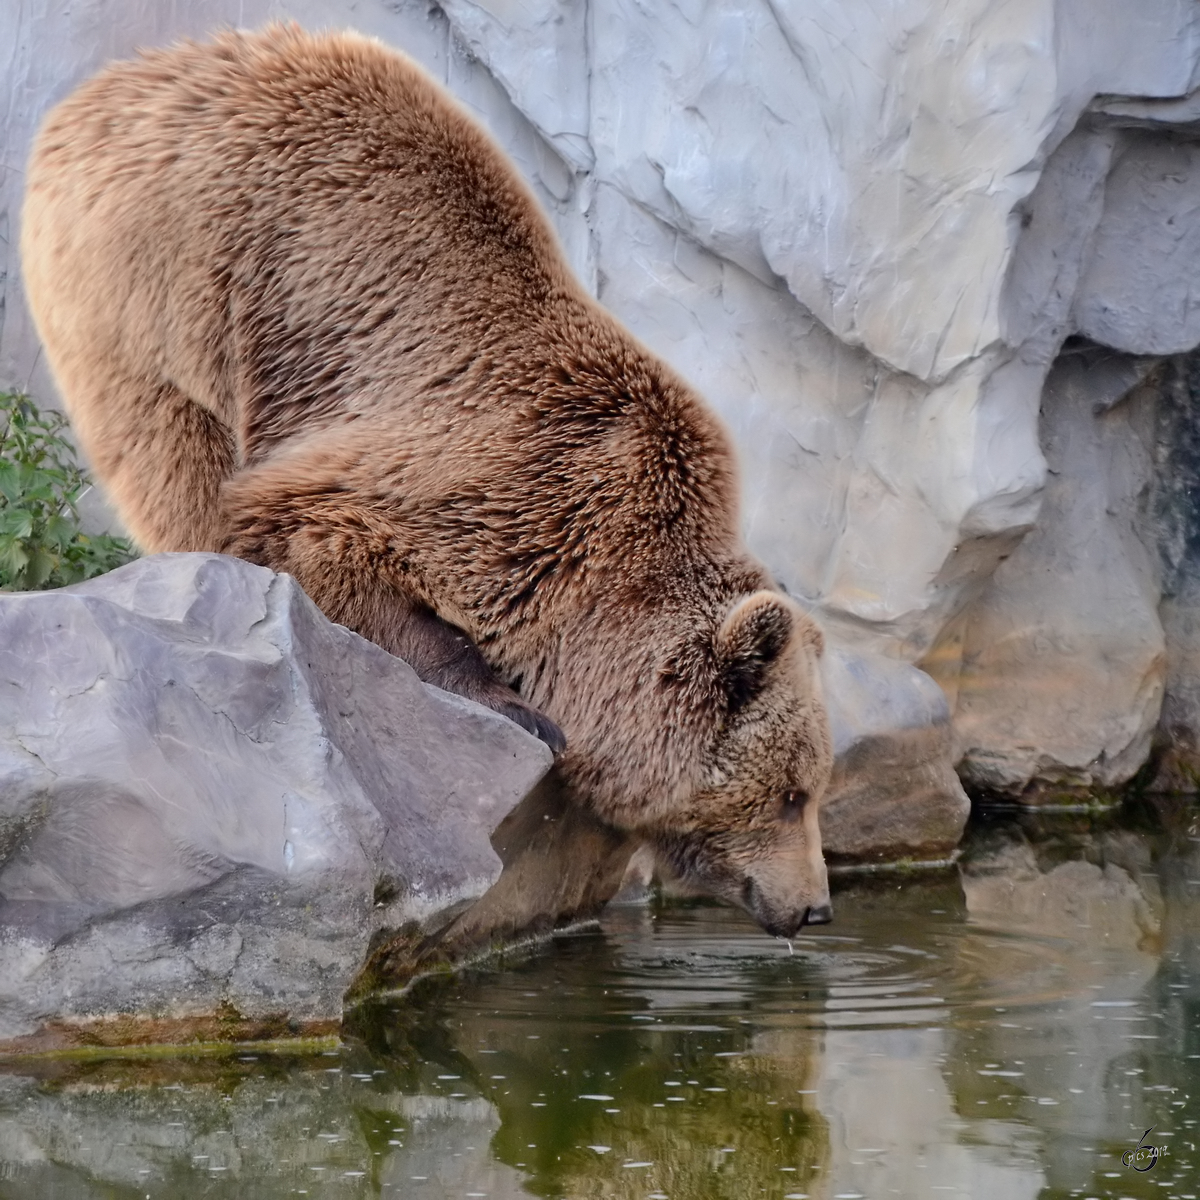 Dieser Kodiakbär auf der Suche nach Wasser. (Zoom Gelsenkirchen, Mai 2011)